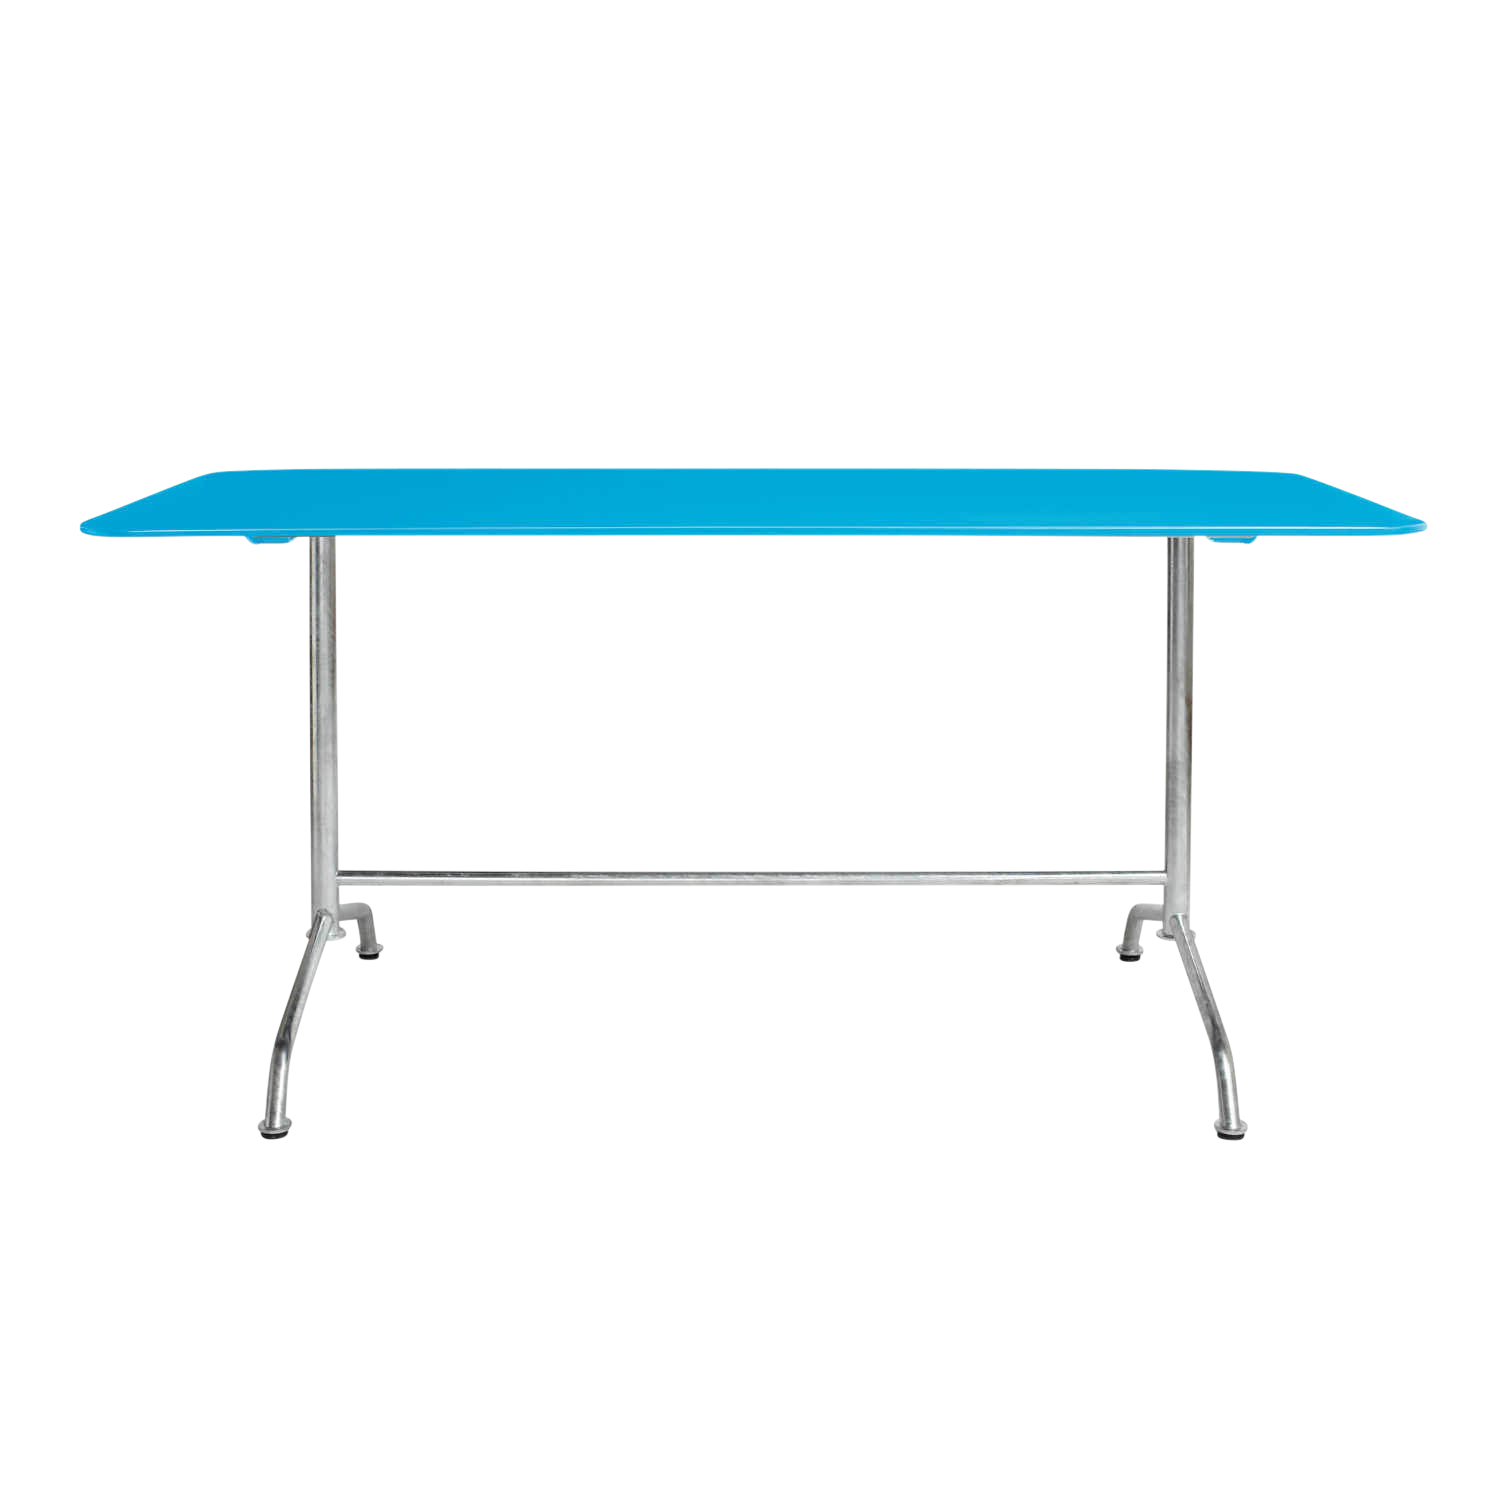 Haefeli Gartentisch, Farbe hellblau ncs s1060b, Grösse ø 90 cm von Embru